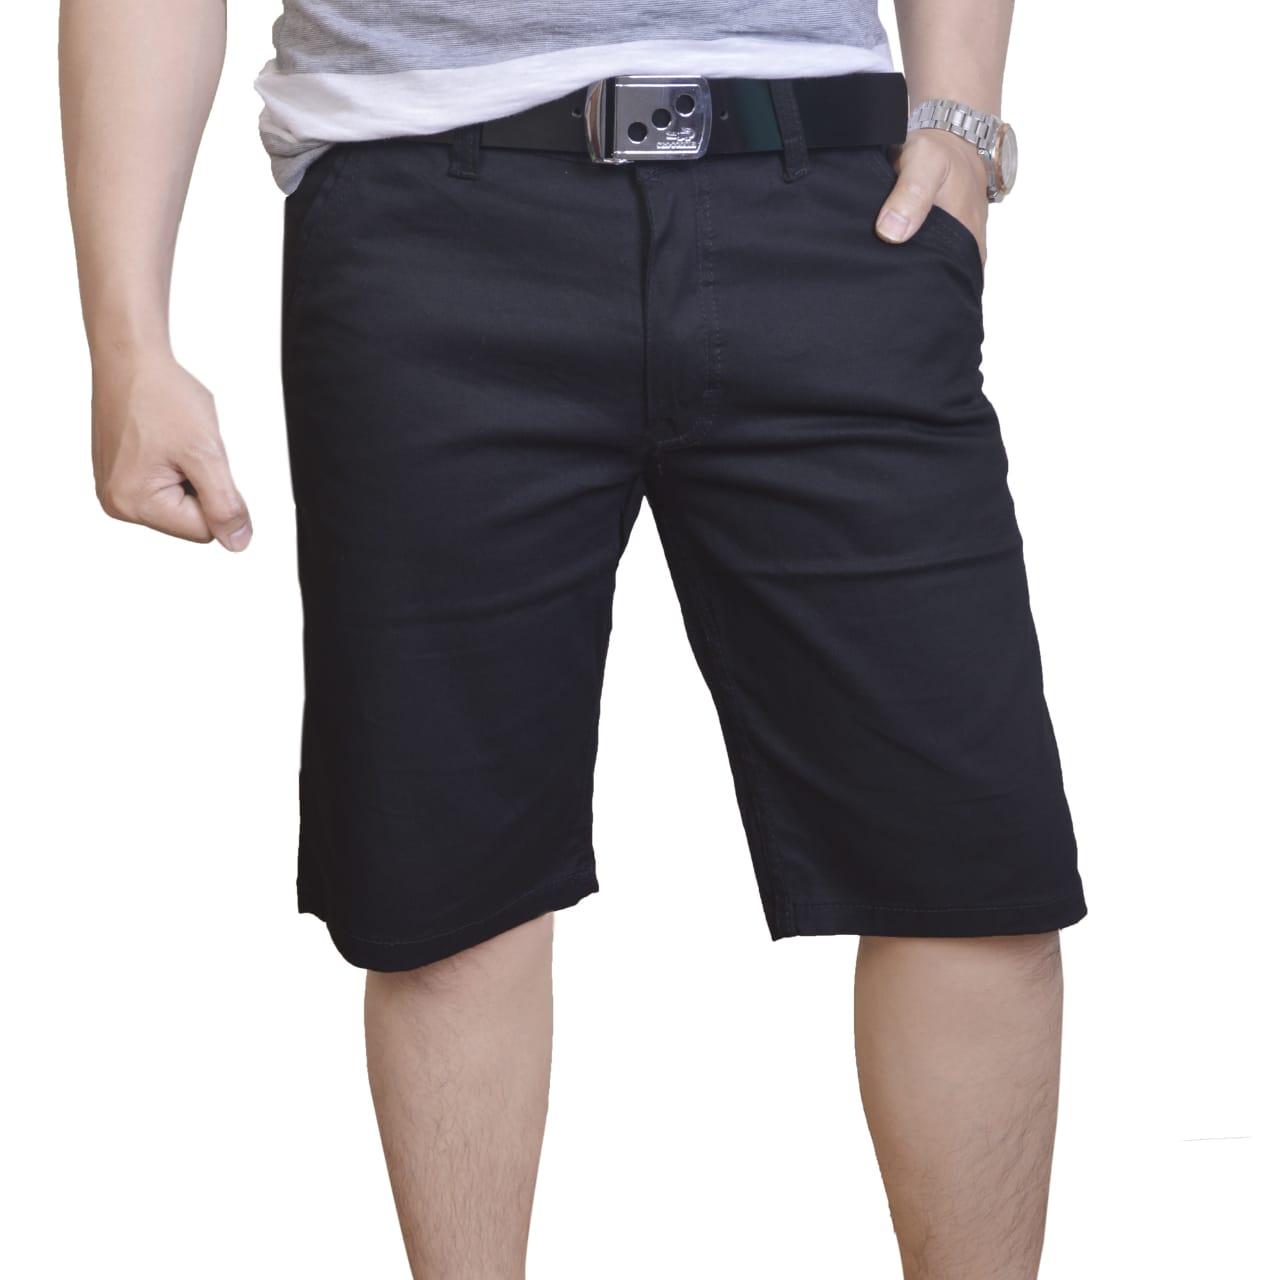 Celana Pendek Sobek Fashion Cowok Terbaru - Smart4K Design